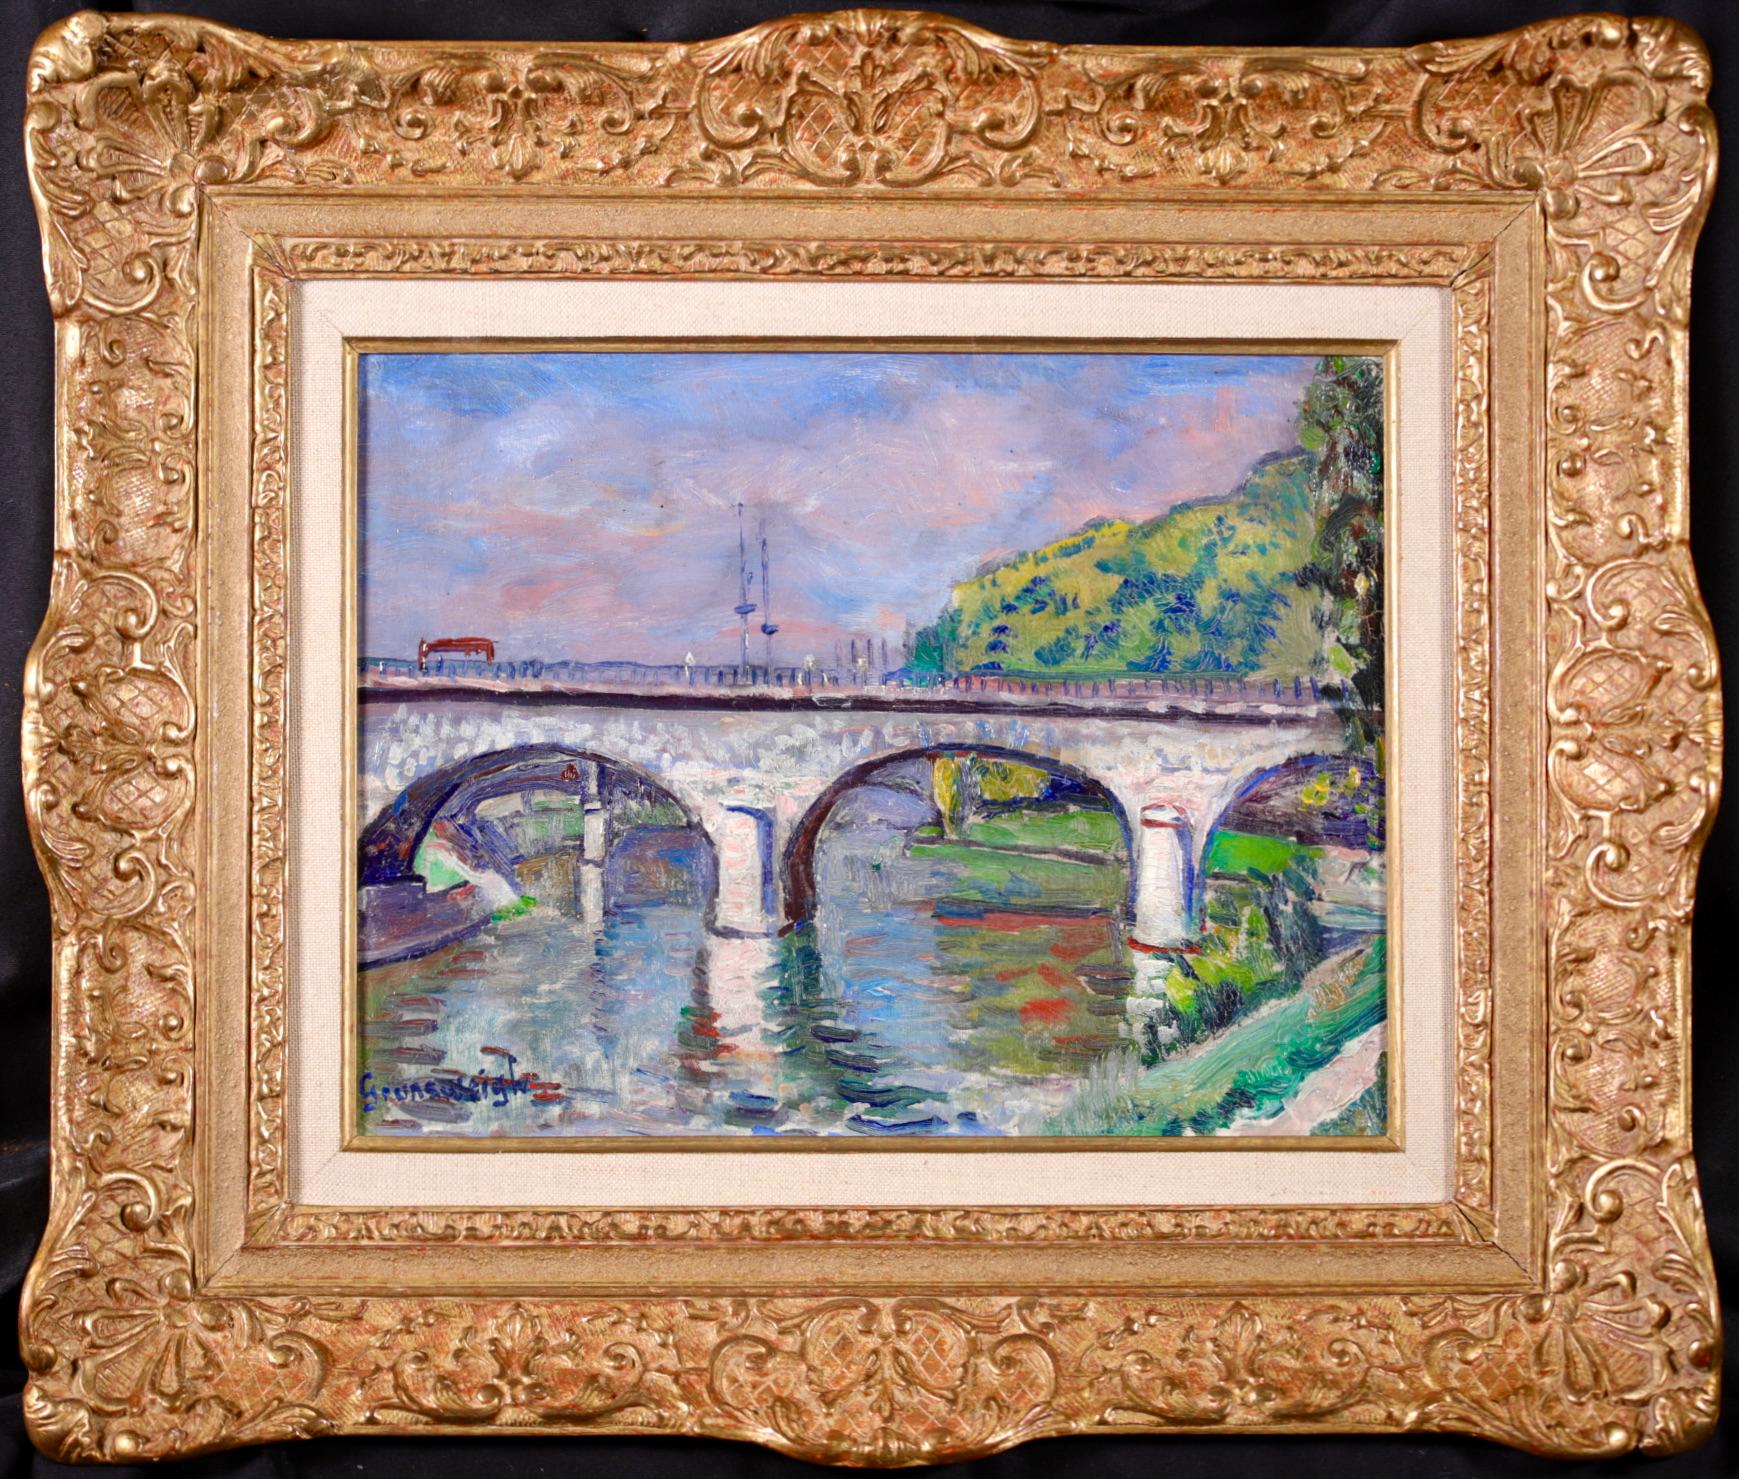 Signiert post impressionistischen Öl auf Leinwand Flusslandschaft circa 1920 aber polnischen Maler Nathan Grunsweigh. Das Werk zeigt einen Blick auf die Seine-Brücke in Paris. Ein wunderschönes farbiges Stück.

Unterschrift:
Signiert unten